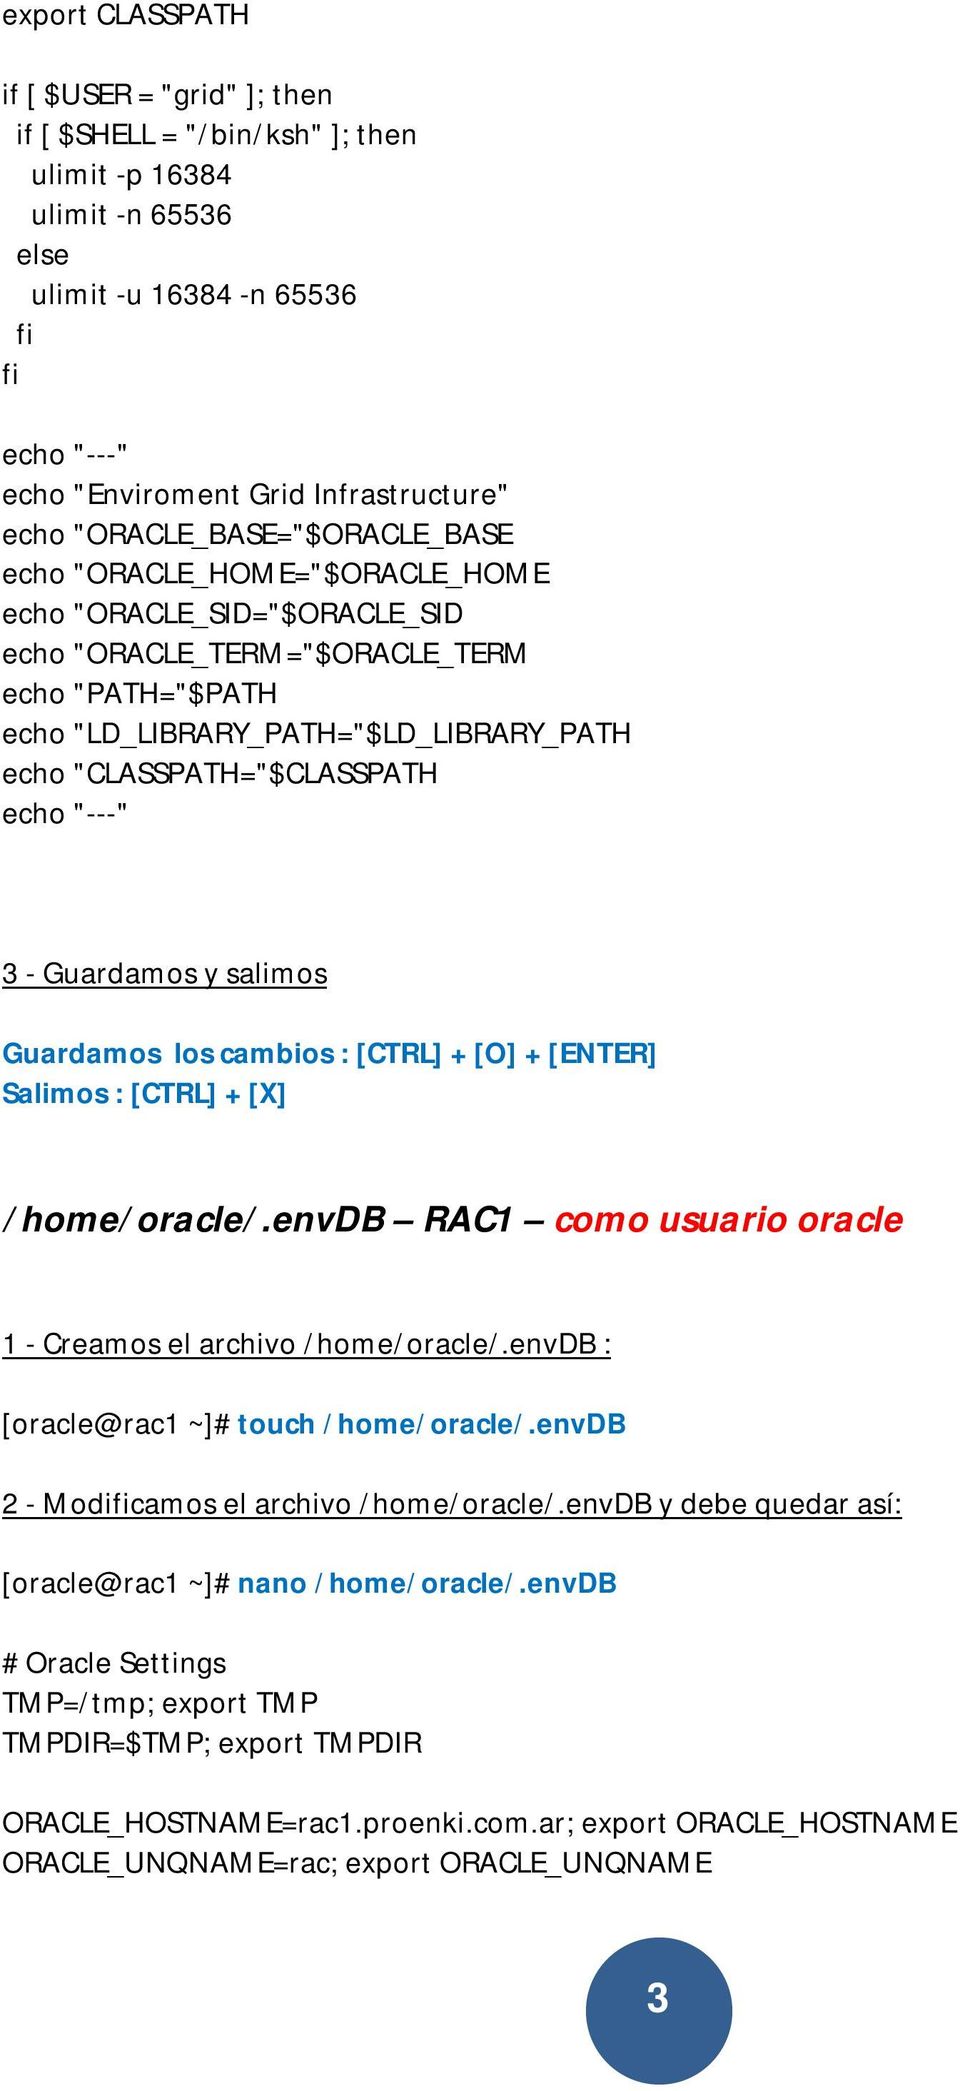 "CLASSPATH="$CLASSPATH /home/oracle/.envdb RAC1 como usuario oracle 1 - Creamos el archivo /home/oracle/.envdb : [oracle@rac1 ~]# touch /home/oracle/.envdb 2 - Modicamos el archivo /home/oracle/.